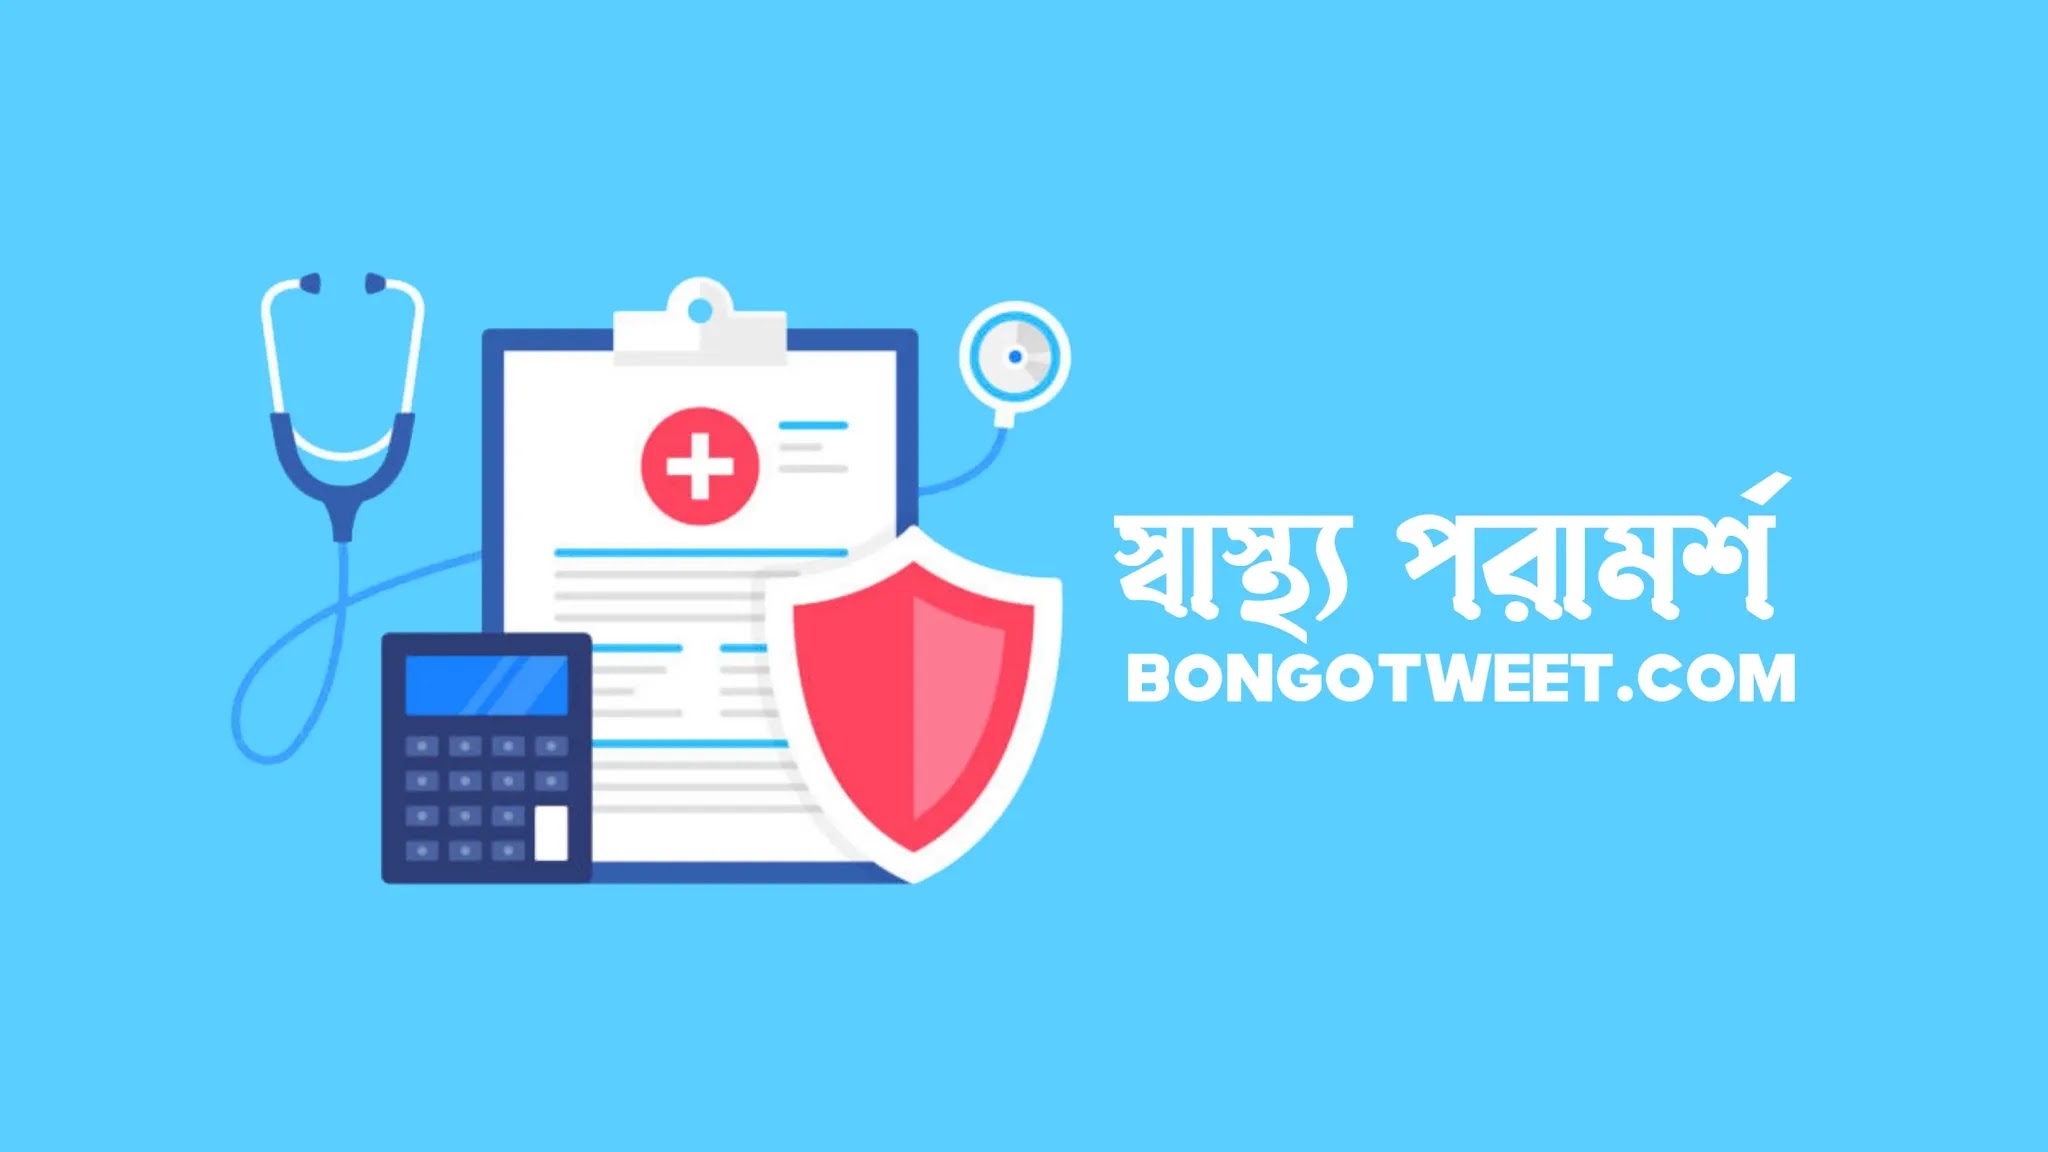 মুখের দুর্গন্ধ দূর করার উপায় -  স্বাস্থ পরামর্শ - Health Tips - বঙ্গ টুইট - Bongo Tweet